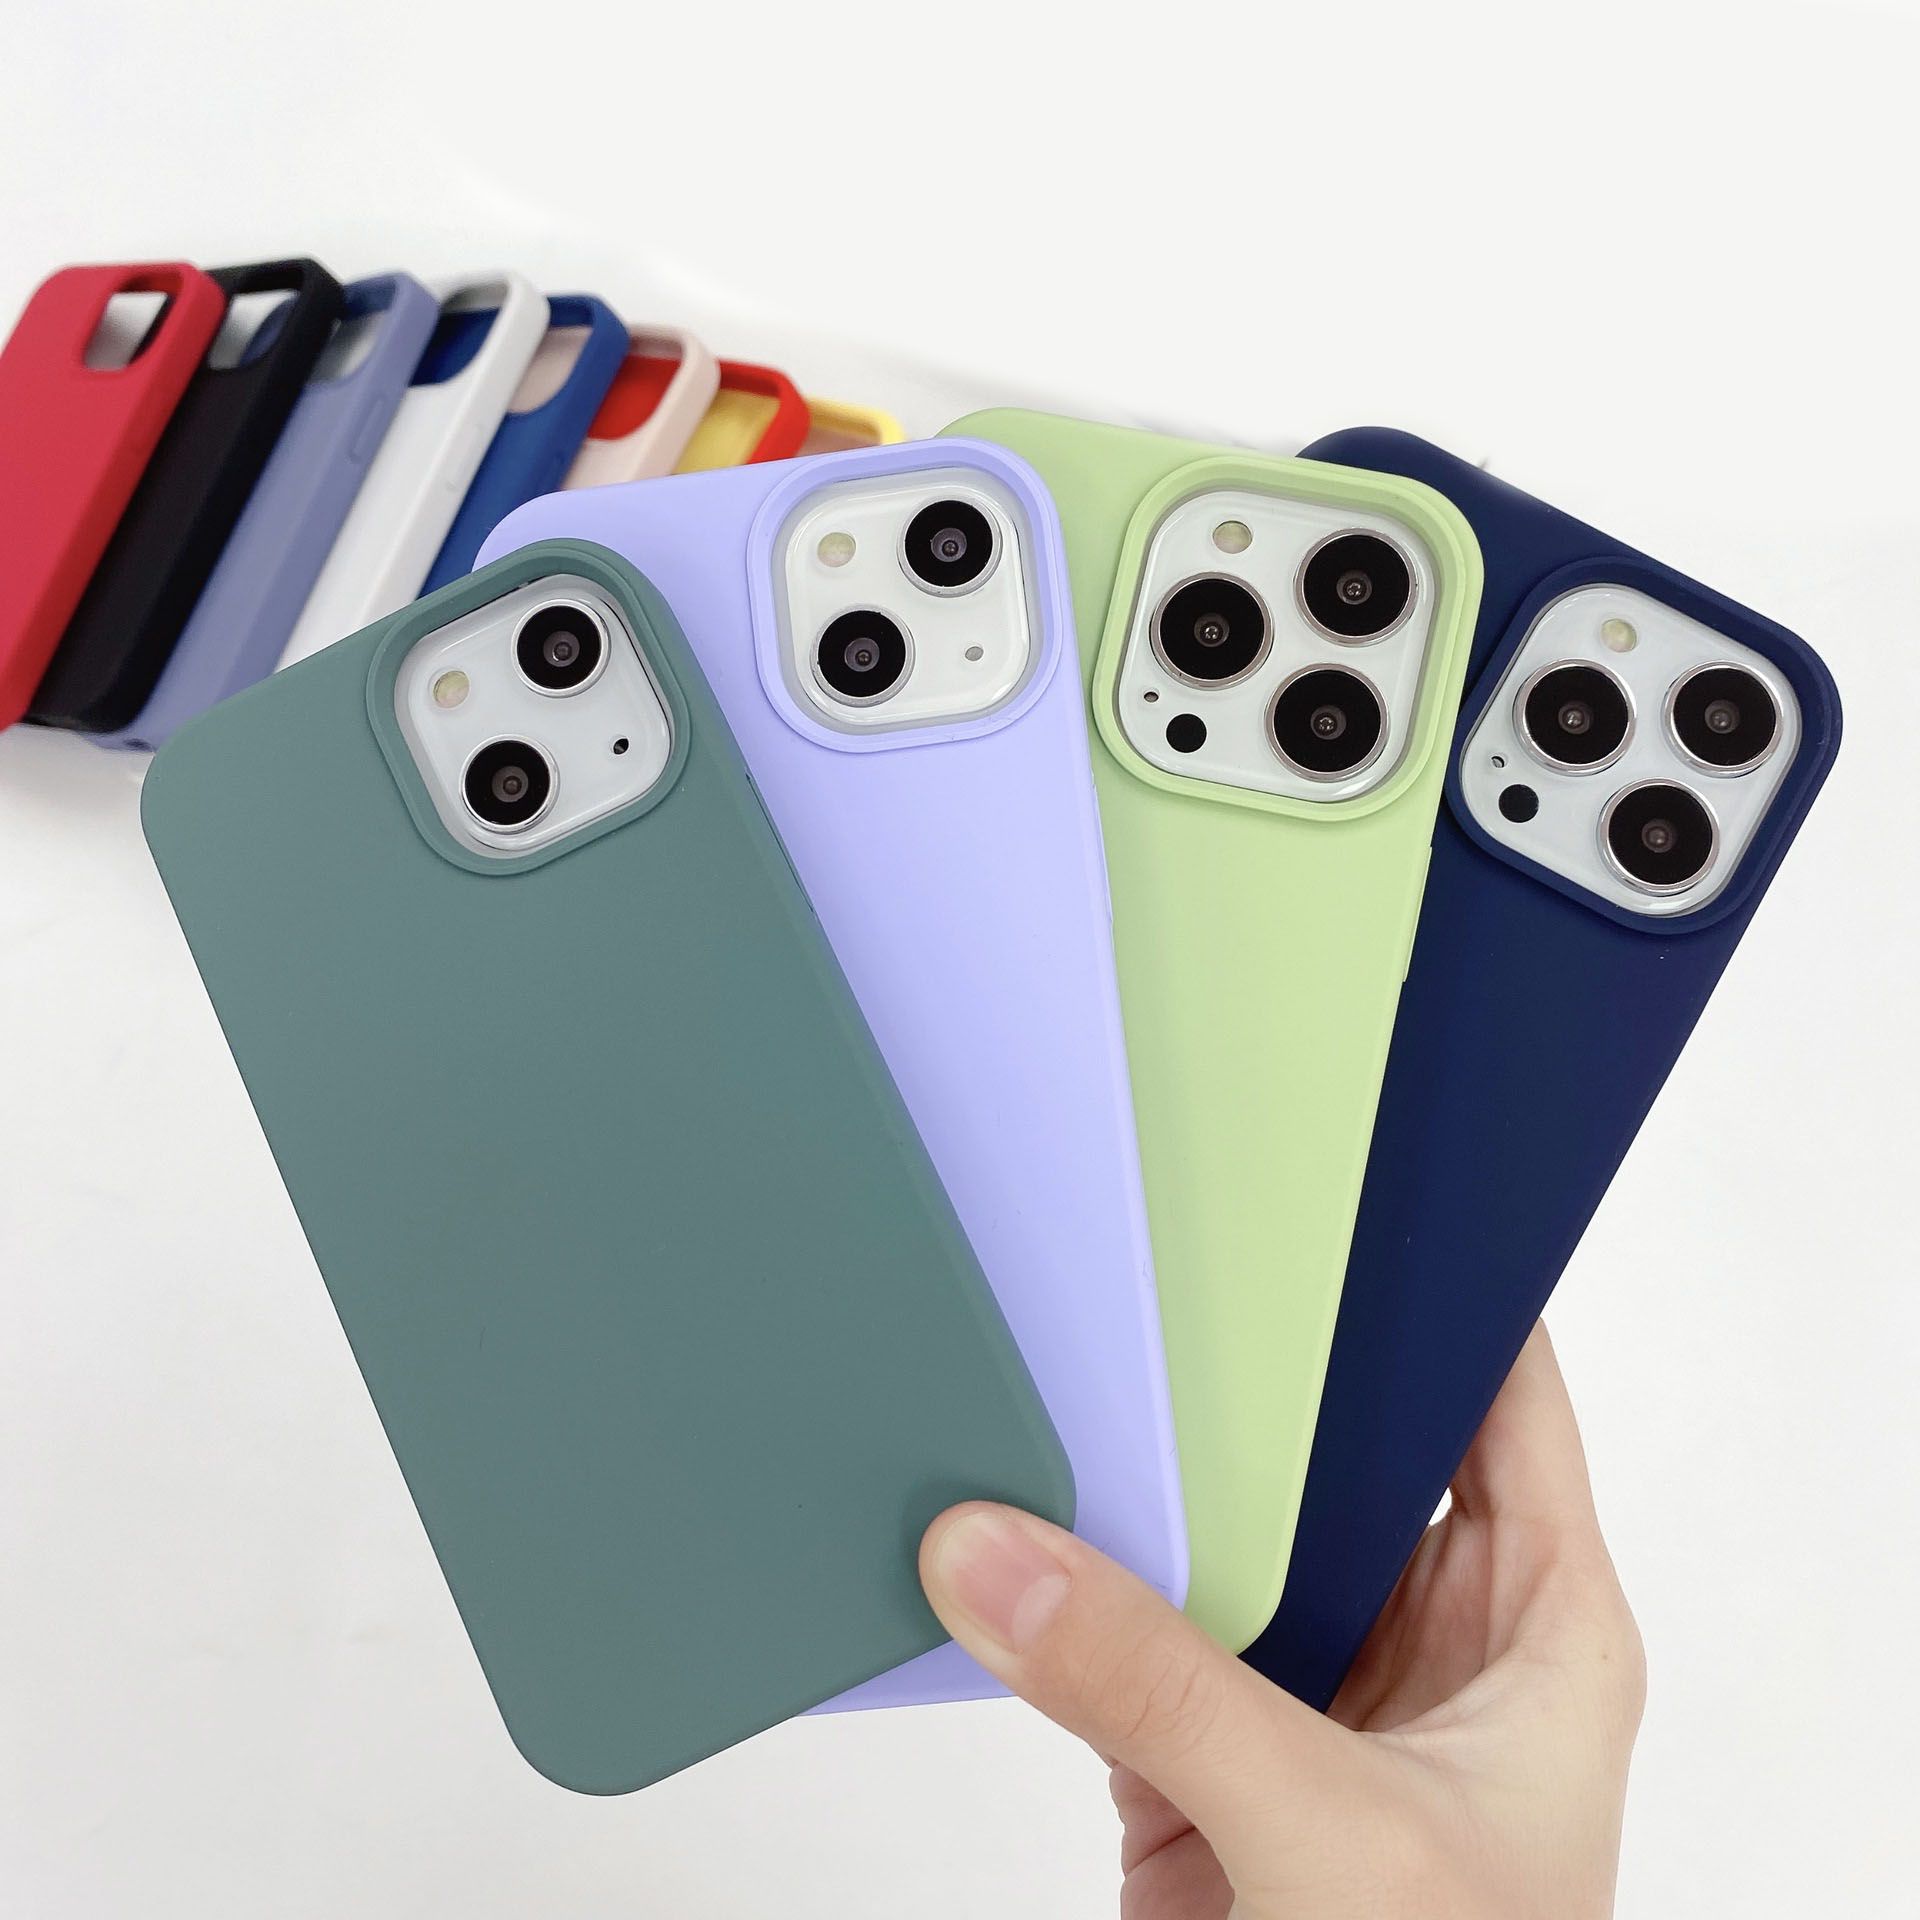 iPhone 11 Pro Max Designer Phone Cases